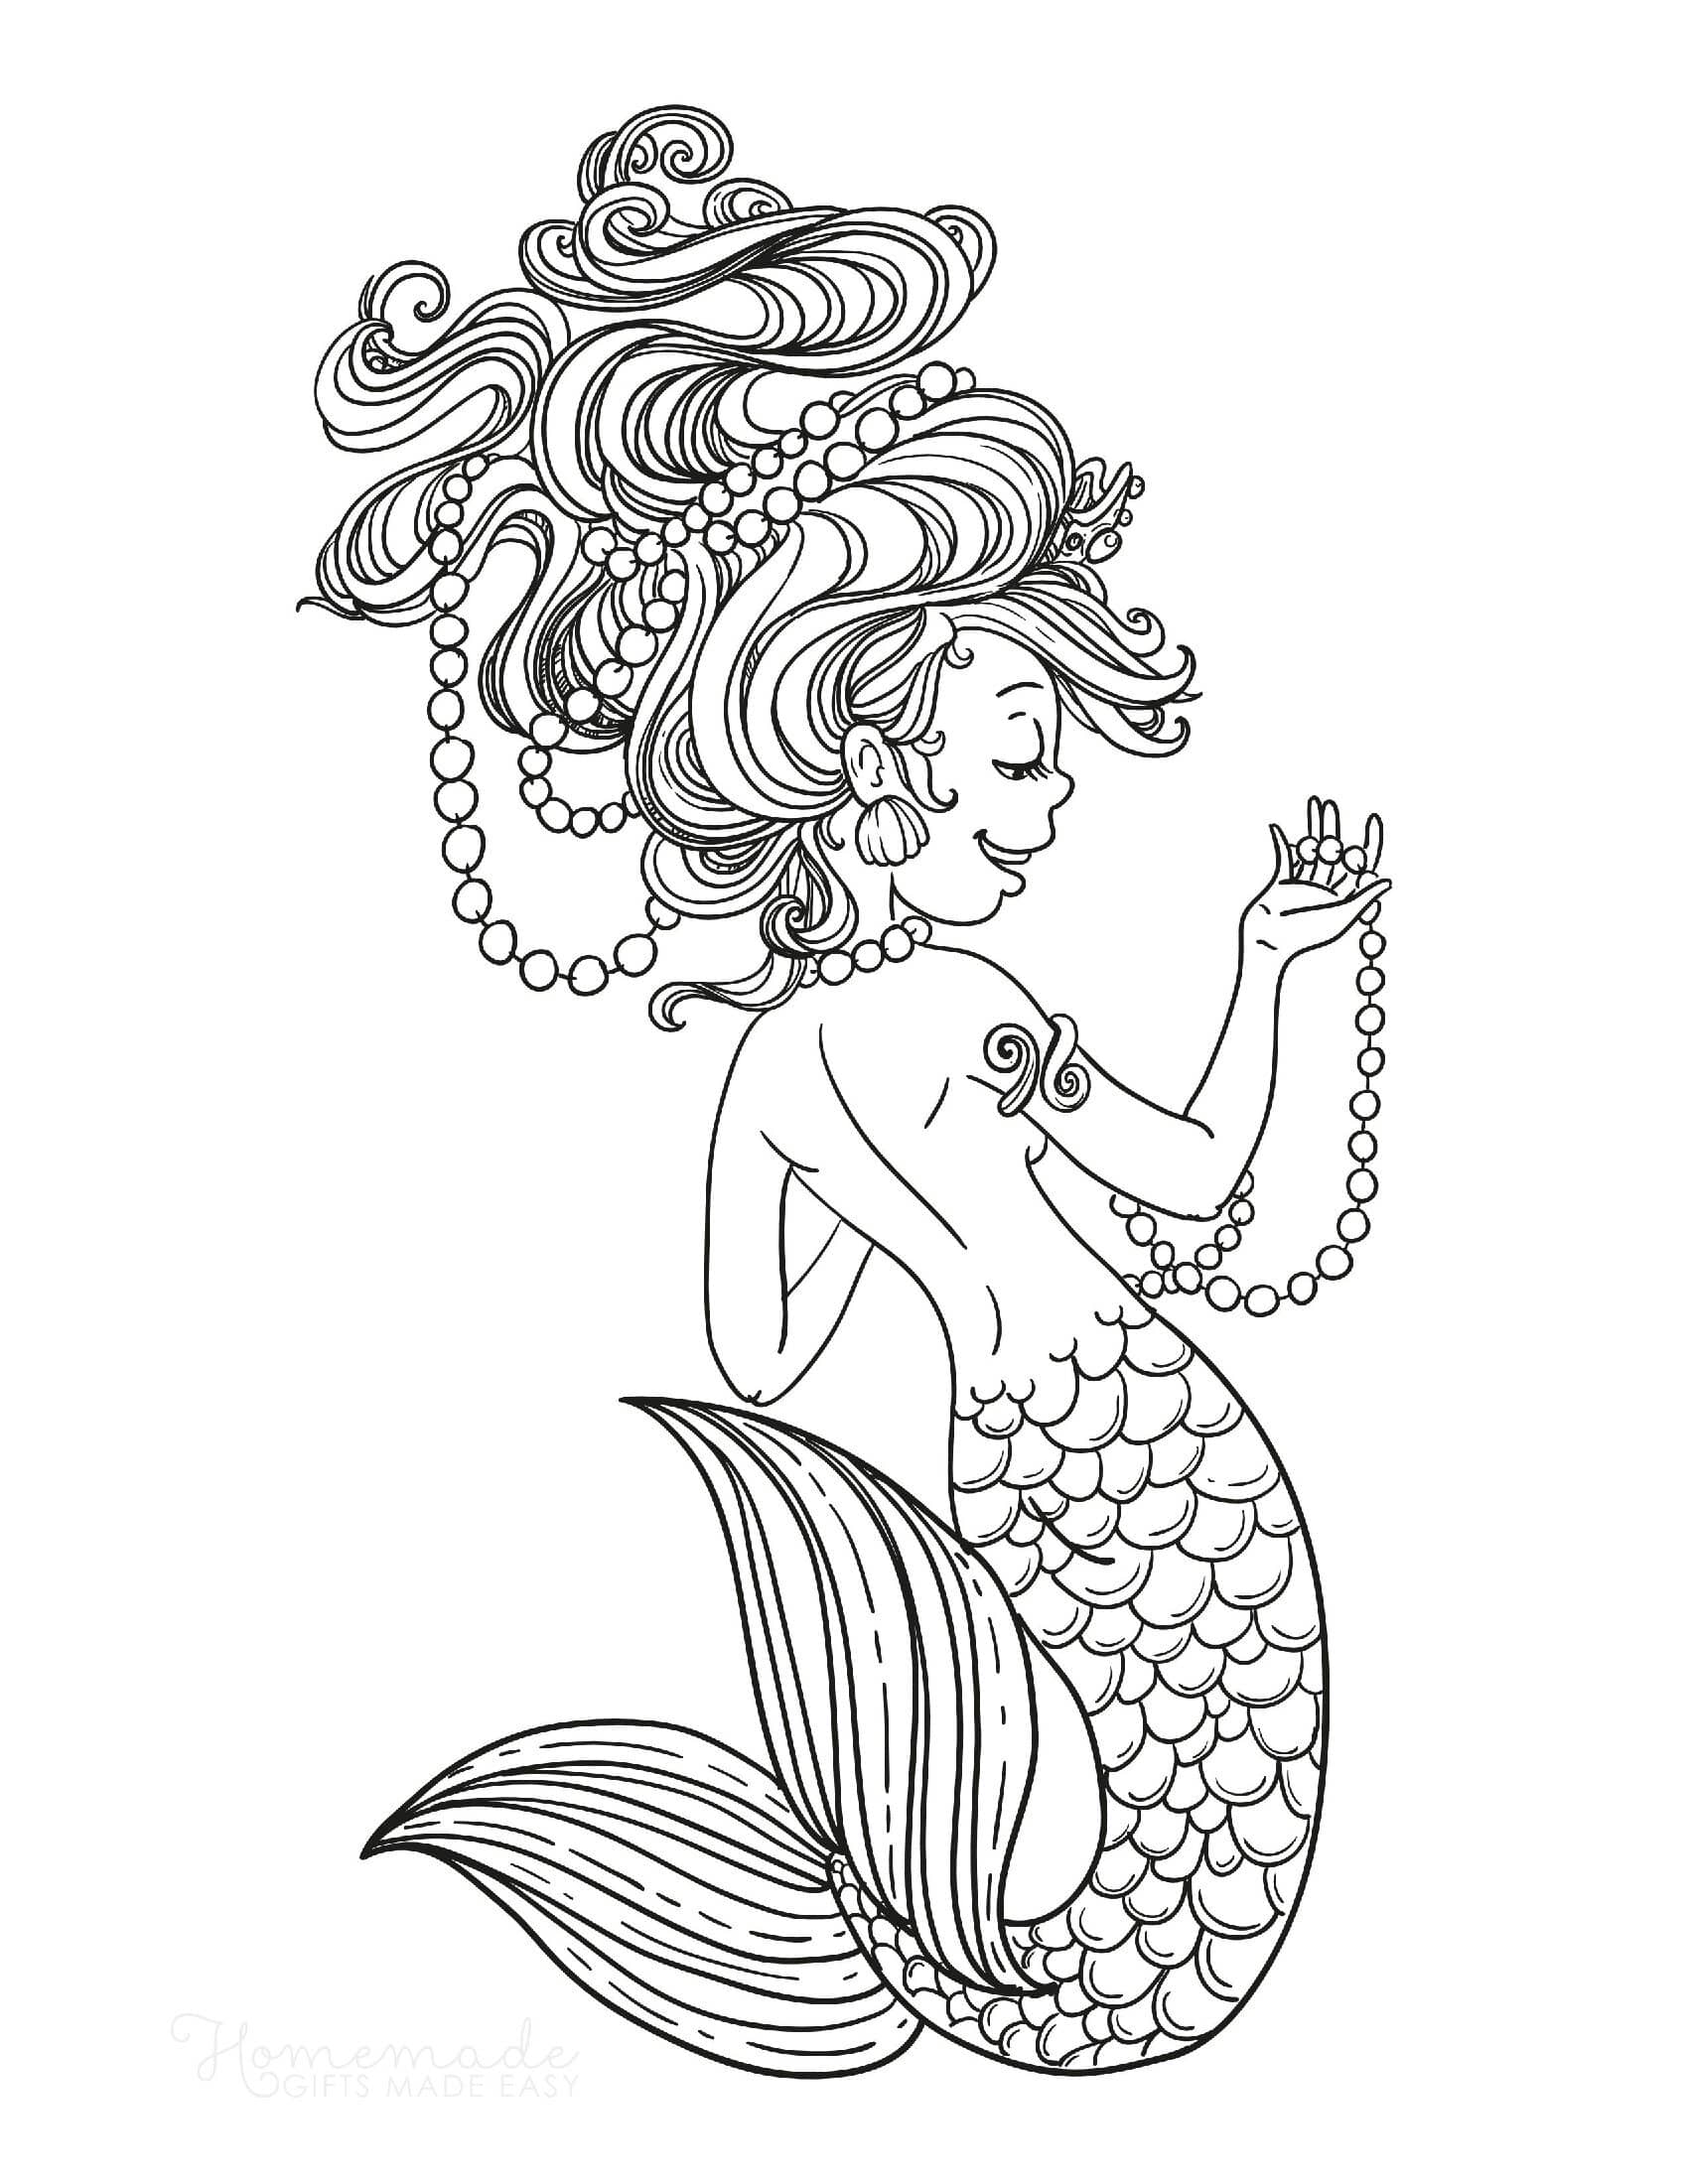 Sirena stringe perle capelli selvaggi Pagina da colorare